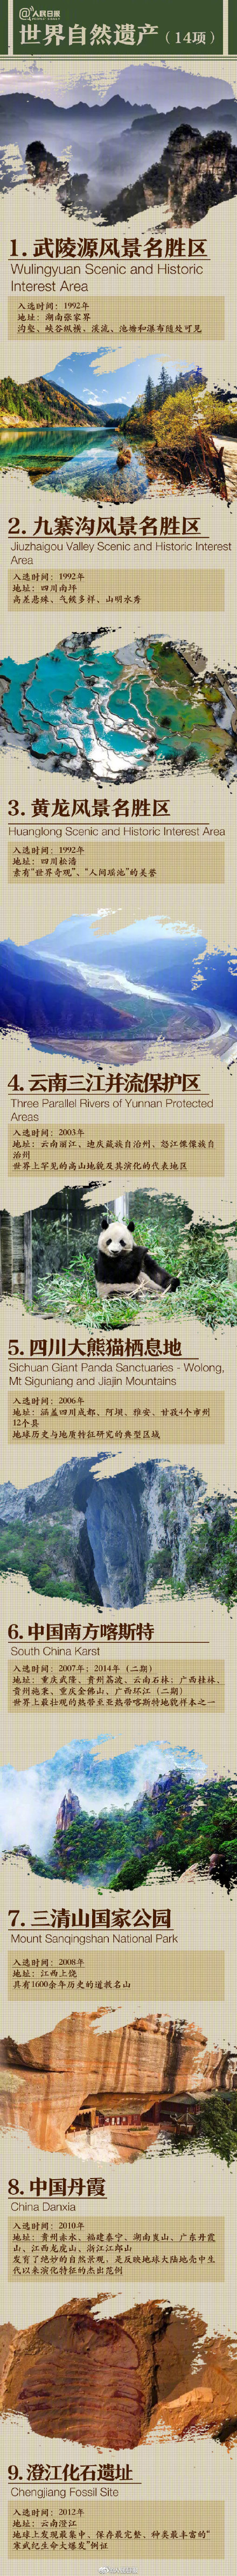 中國有14項世界自然遺產世界第一